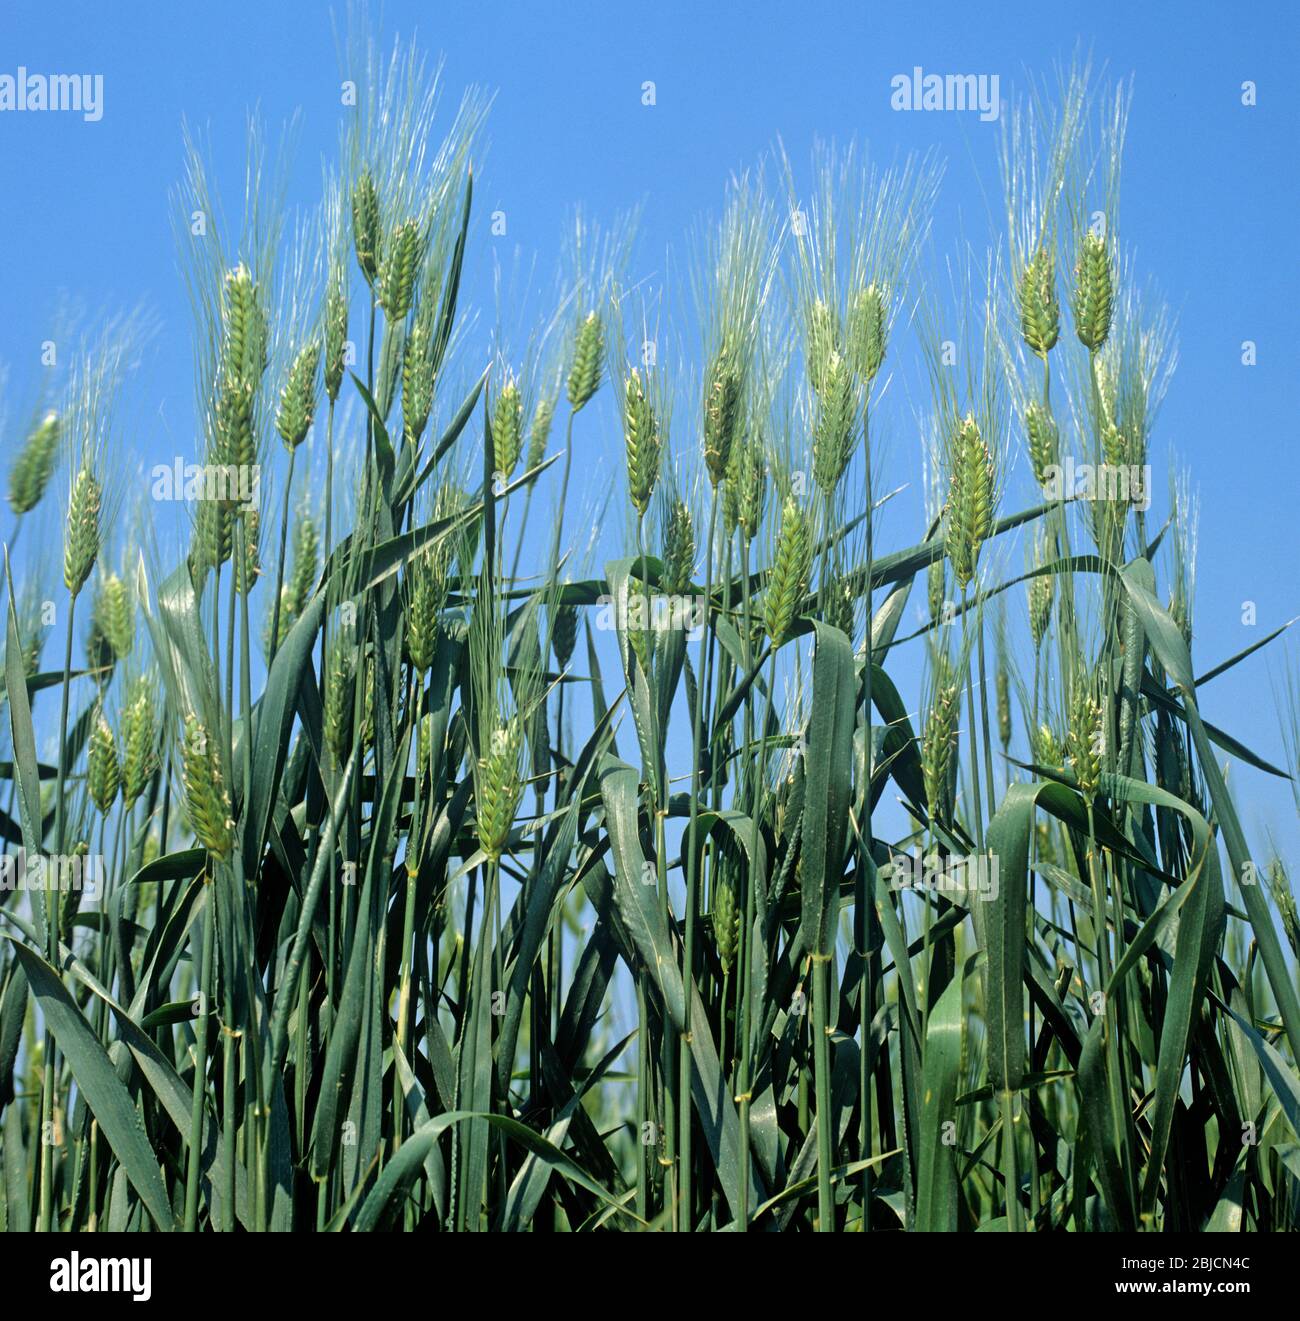 Club wheat (Triticum aestivum compactum) crop  in ear against a blue sky, Greece Stock Photo